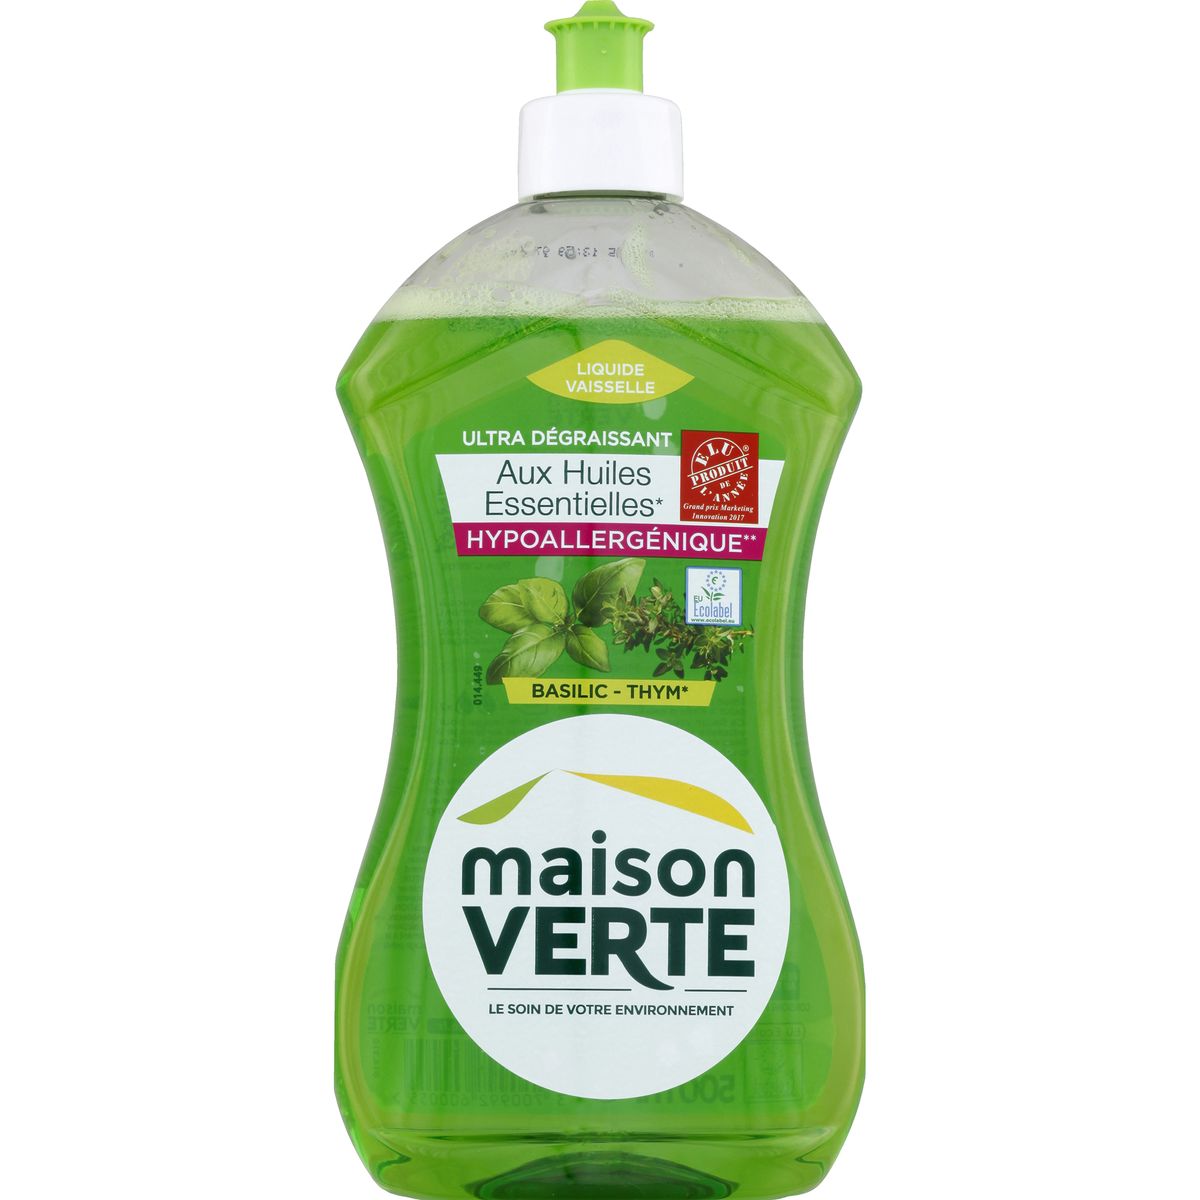 Fourmi Verte Liquide Vaisselle Bio 1L